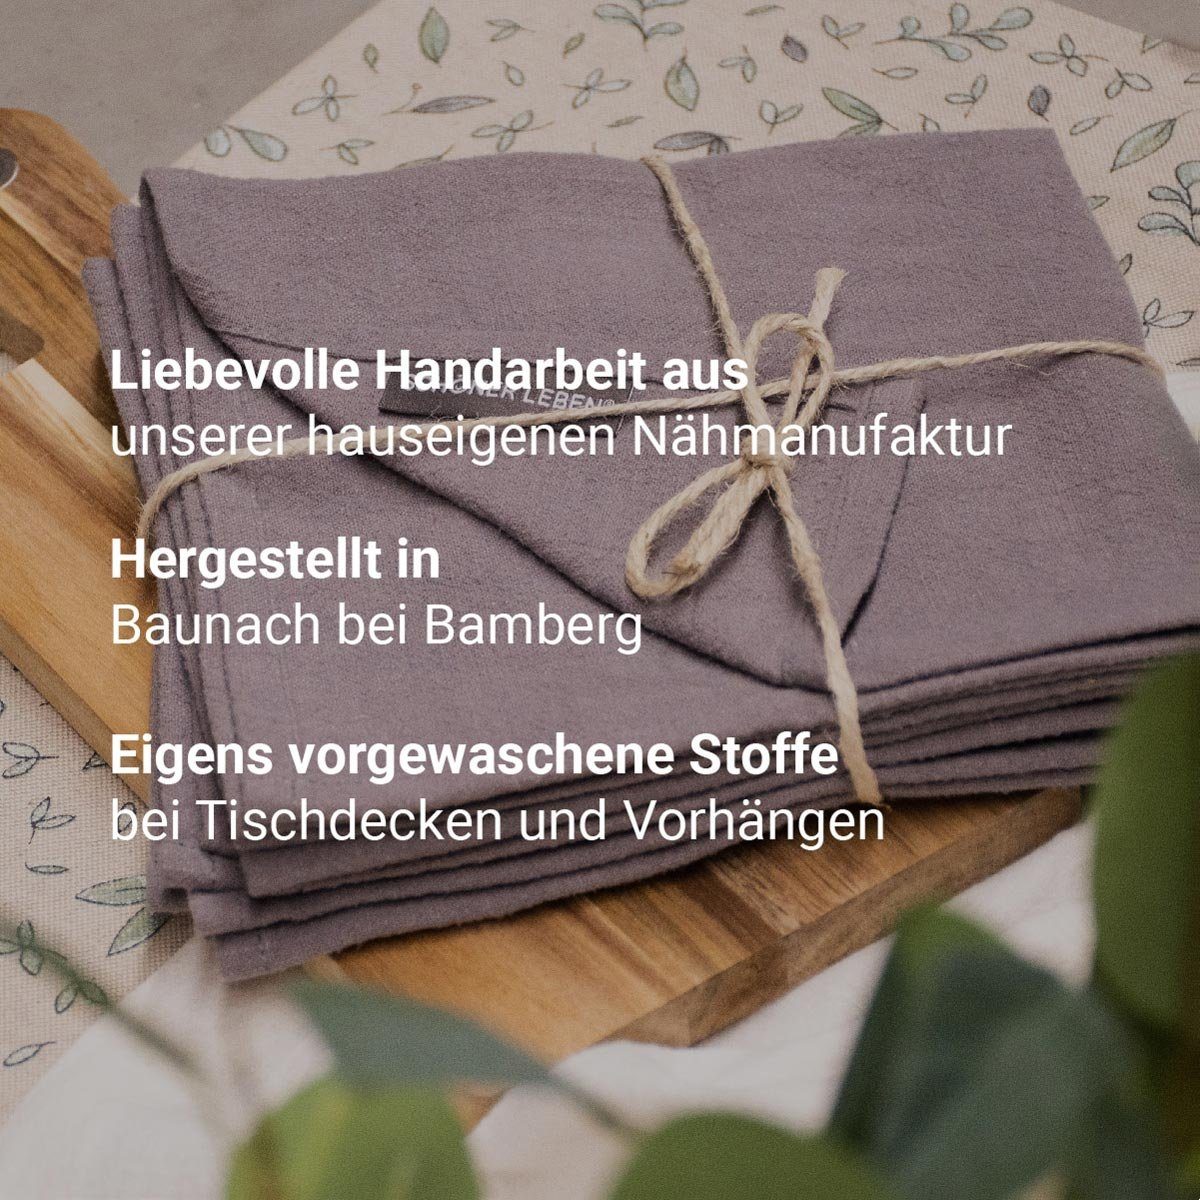 SCHÖNER LEBEN. Tischläufer Schöner Leben Blätter handmade grau 40x160cm, weiß Tischläufer khaki